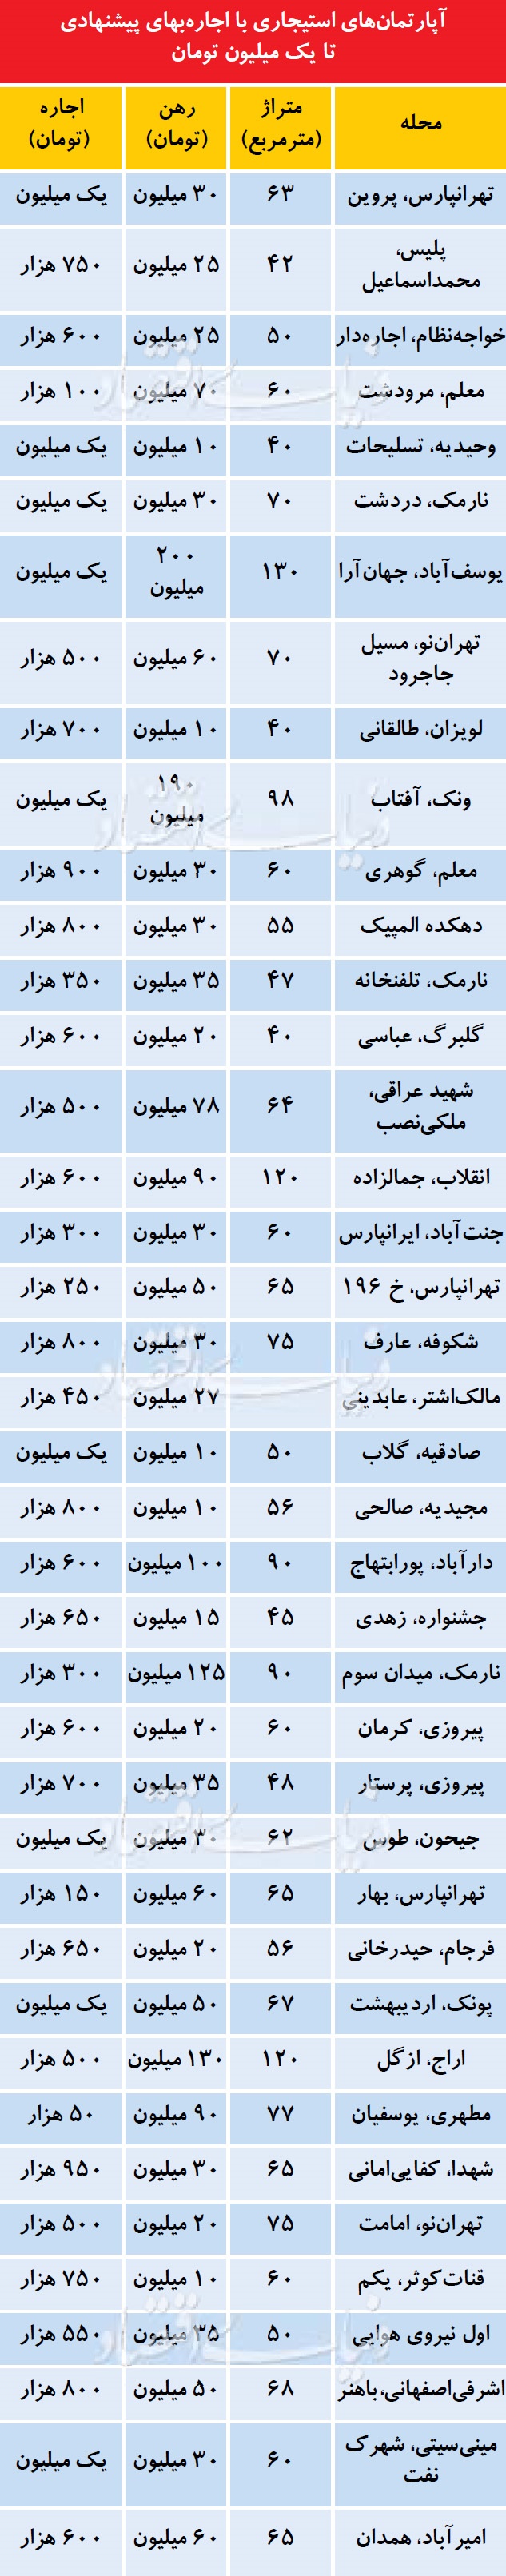 کمترین و بیشترین اجاره خانه ها در تهران